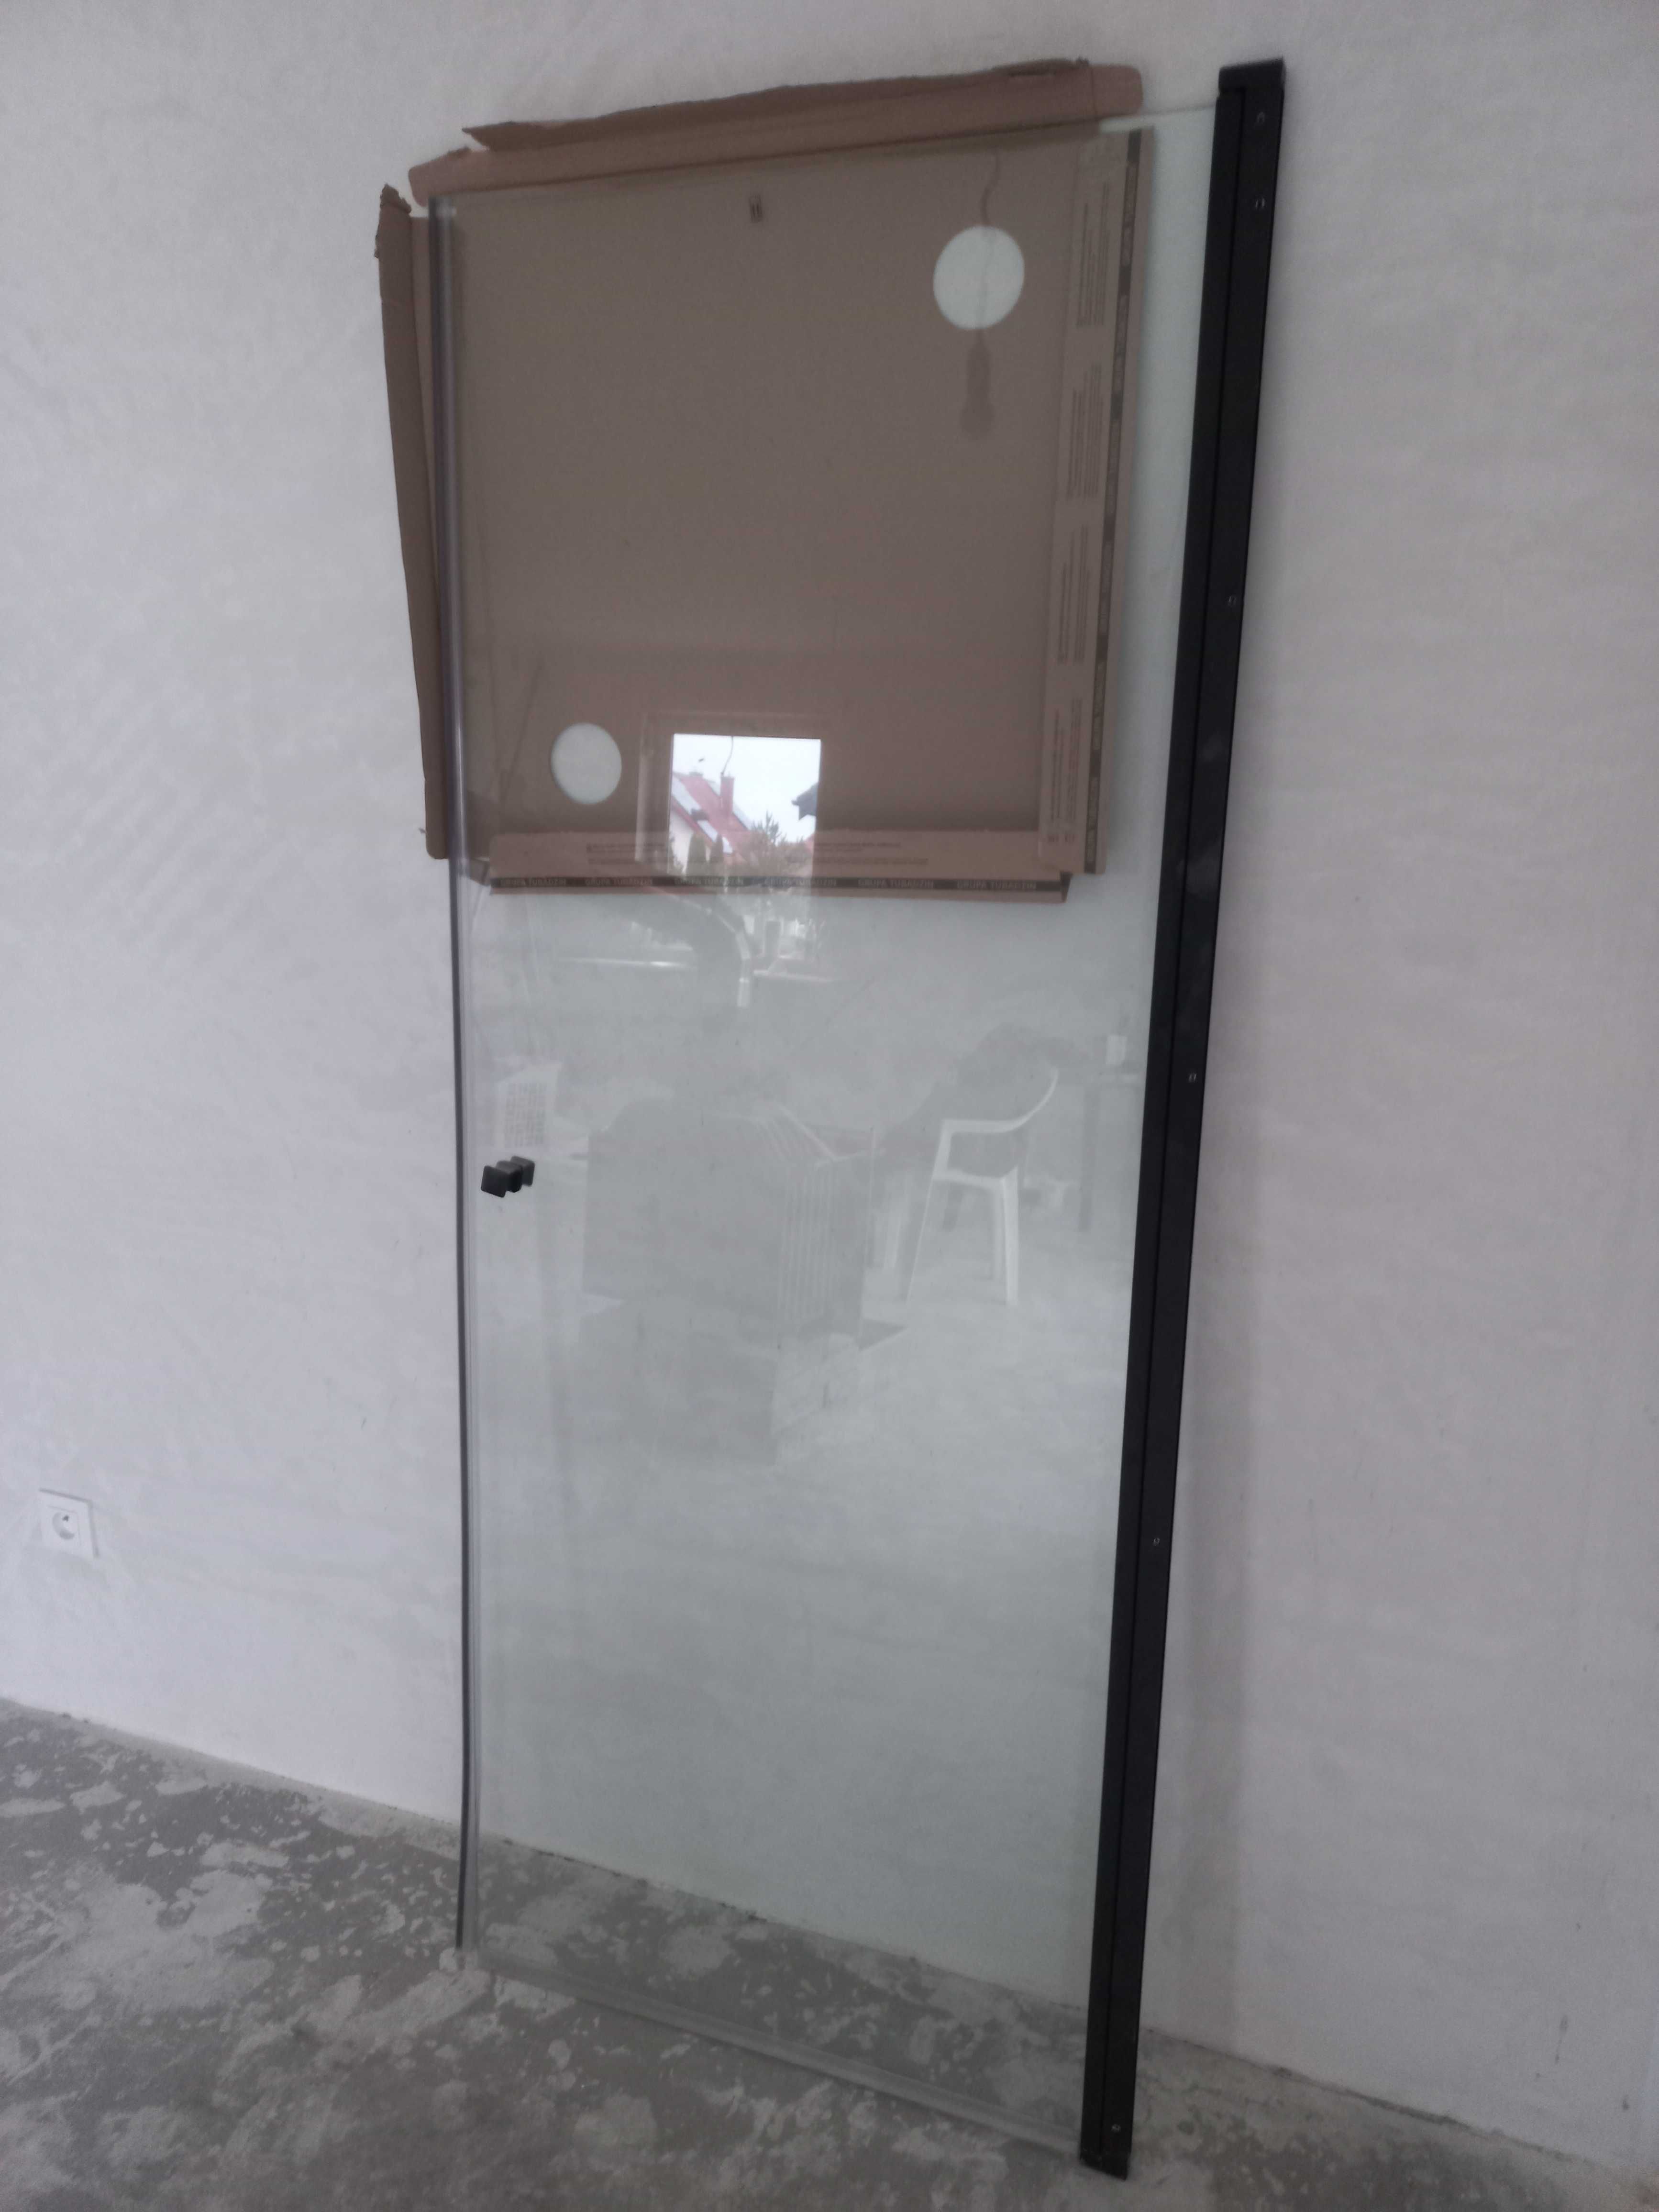 Drzwi szklane 190cm x 75cm rozwierane ścianka prysznicowa loftowe